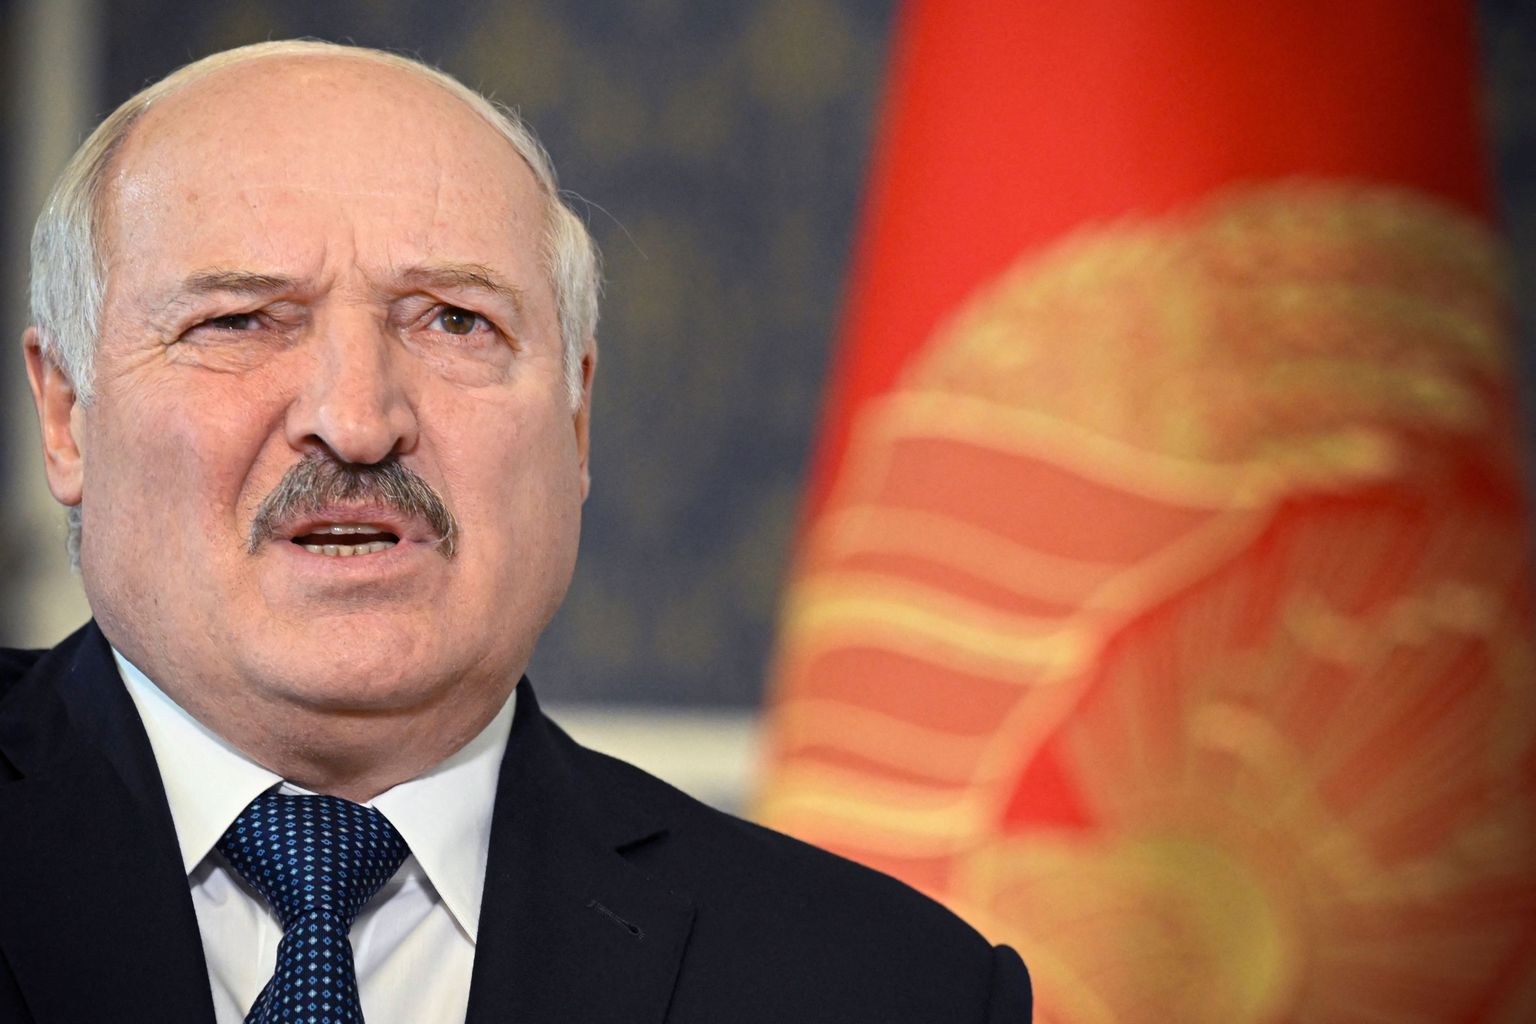 Белорусский диктатор Александр Лукашенко